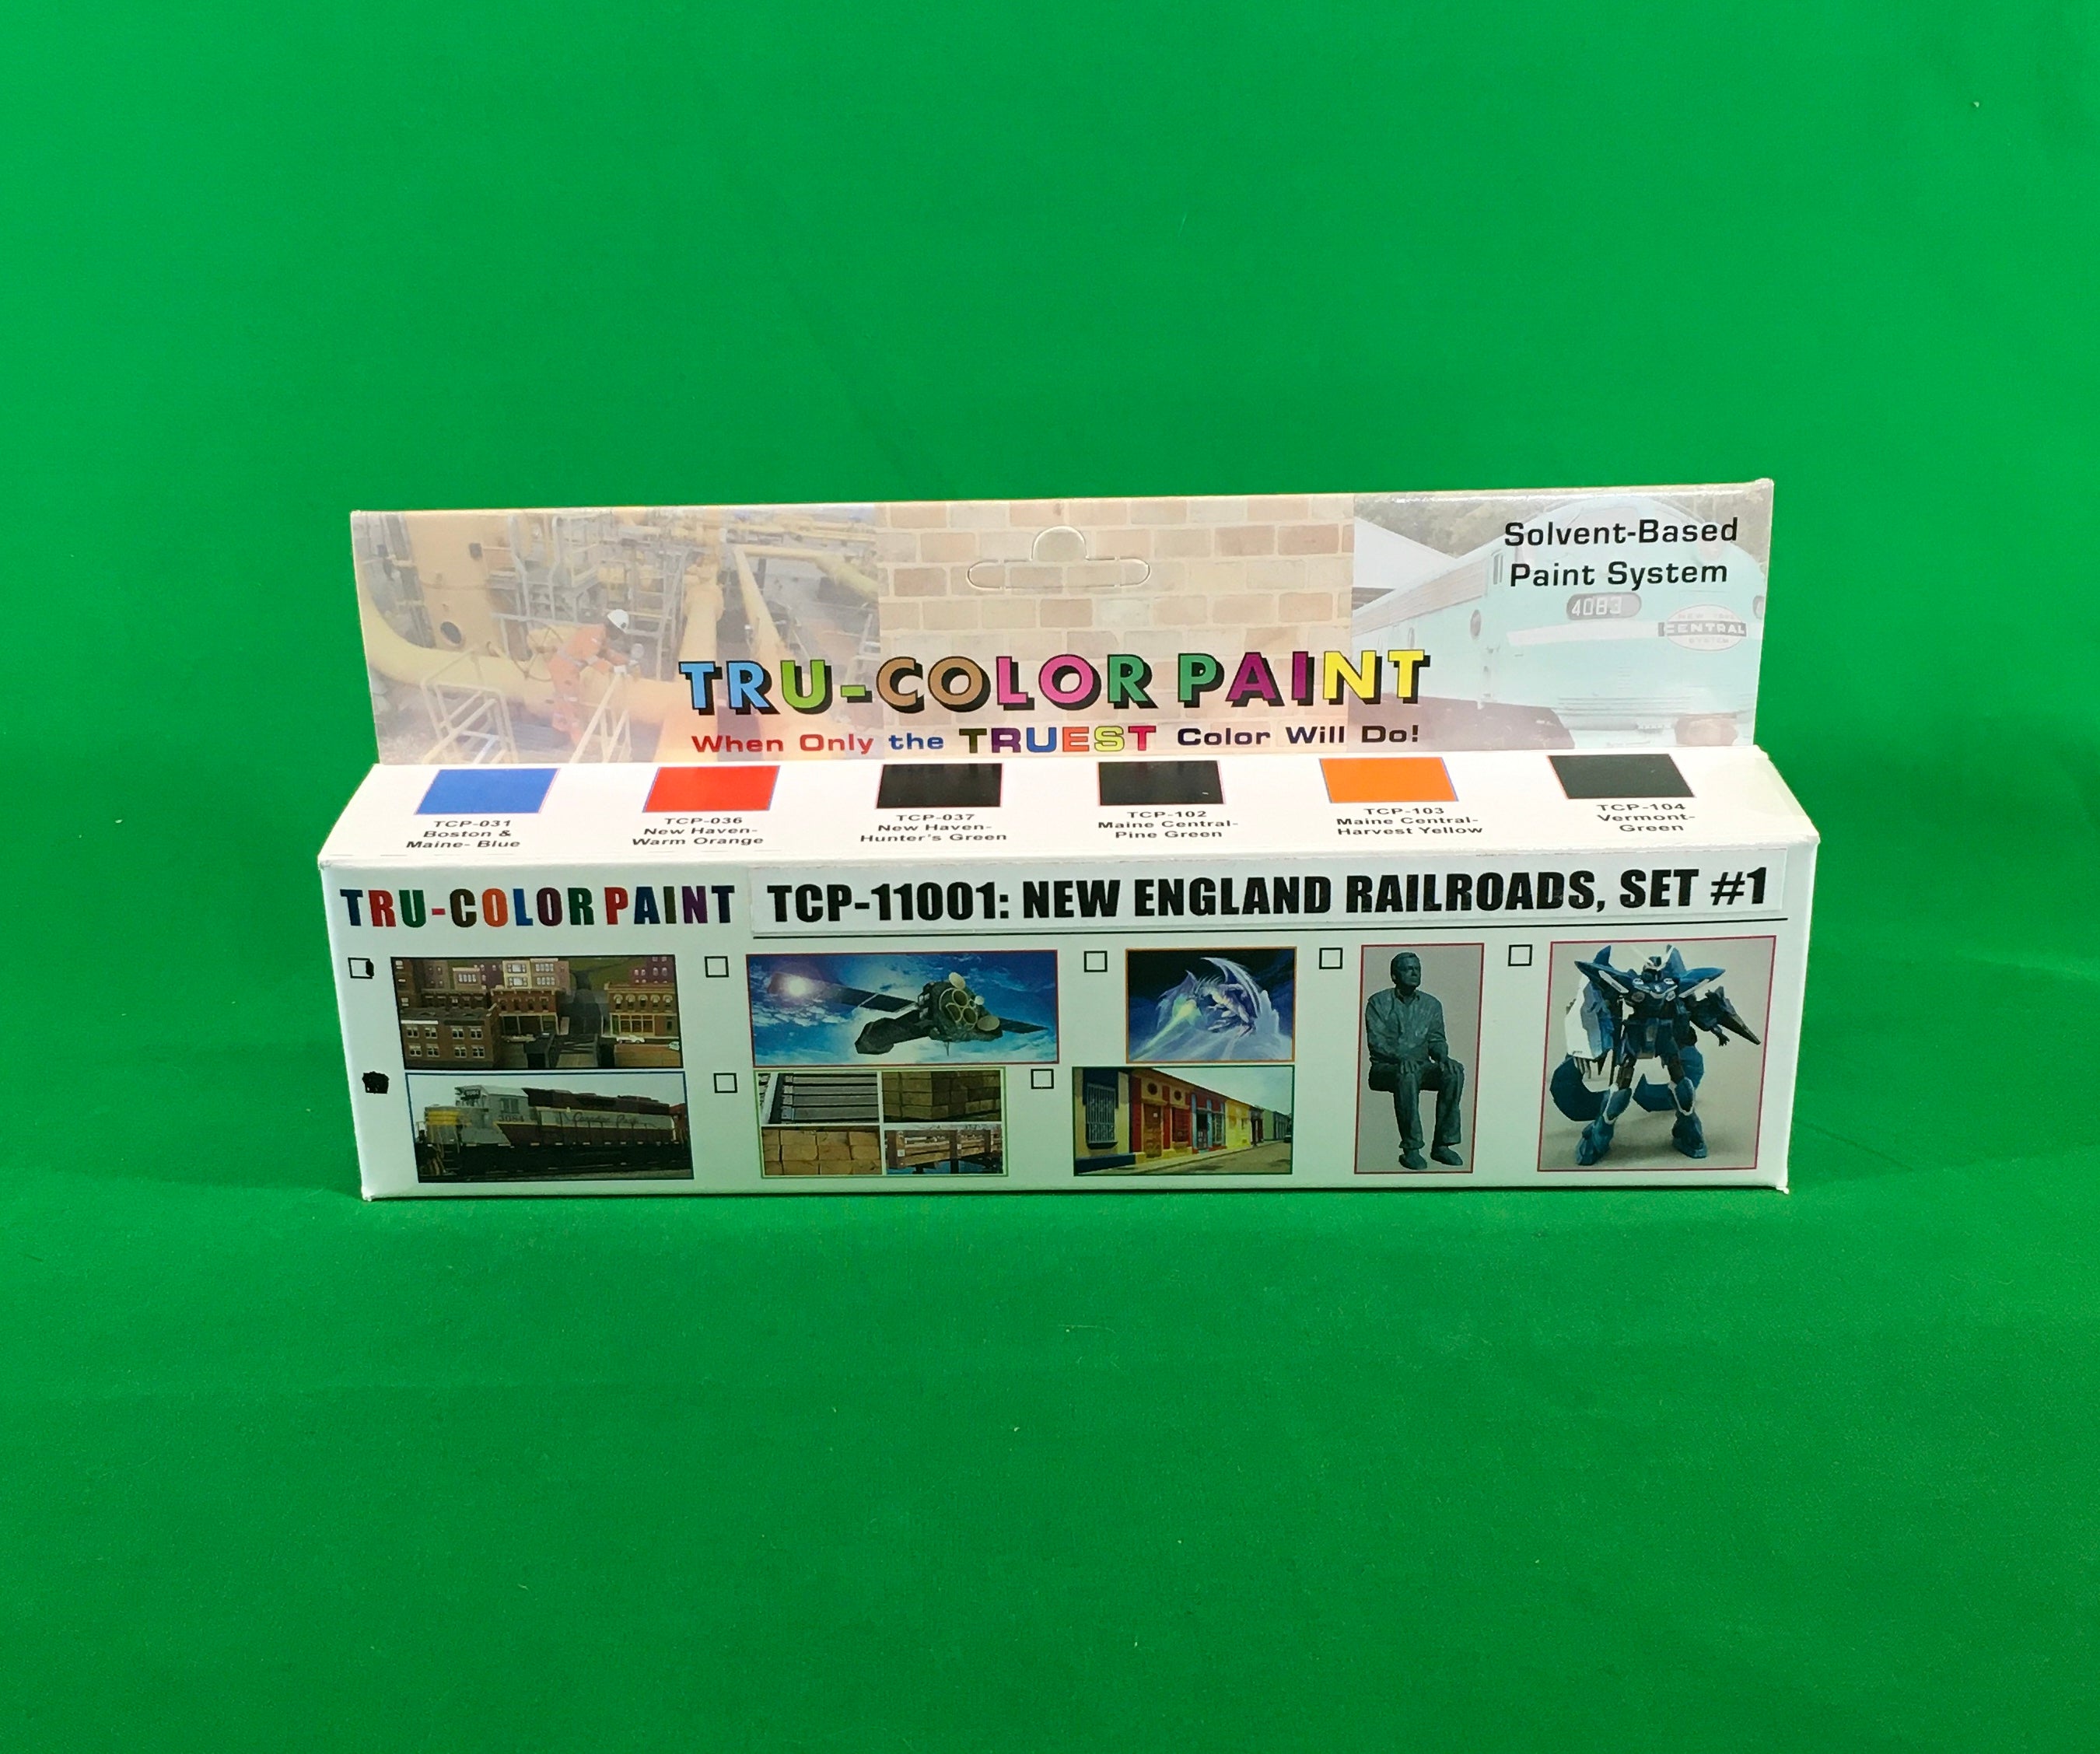 Tru-Color Paint - TCP-11001 - New England Railroads Set #1 (Solvent-Based Paint)